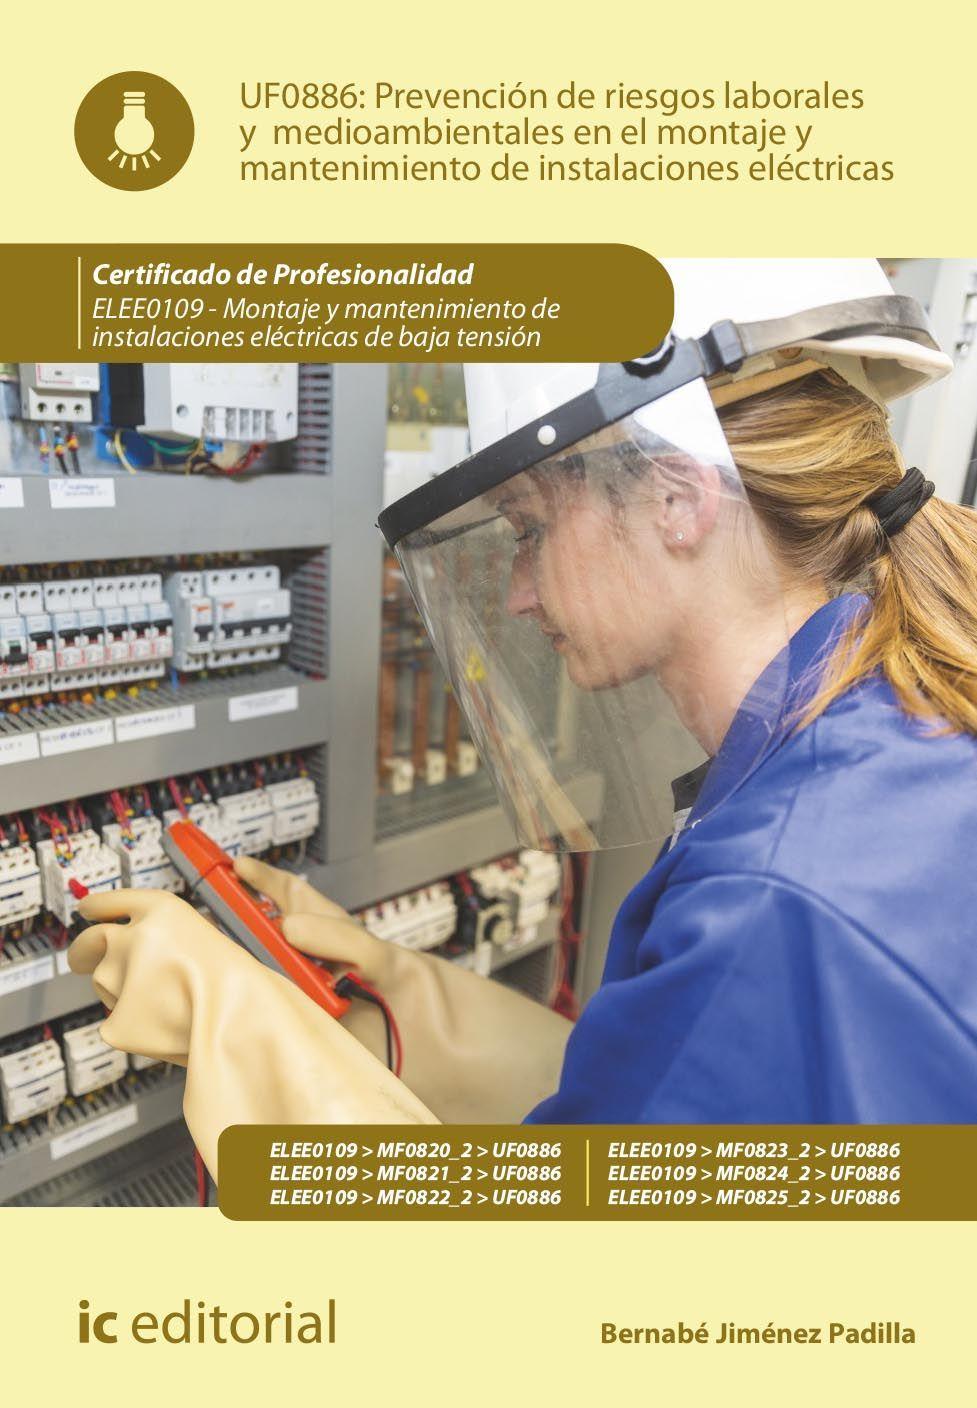 Carte Prevención de riesgos laborales y medioambientales en el montaje y mantenimiento de instalaciones eléctricas. ELEE0109 - Montaje y mantenimiento de in 